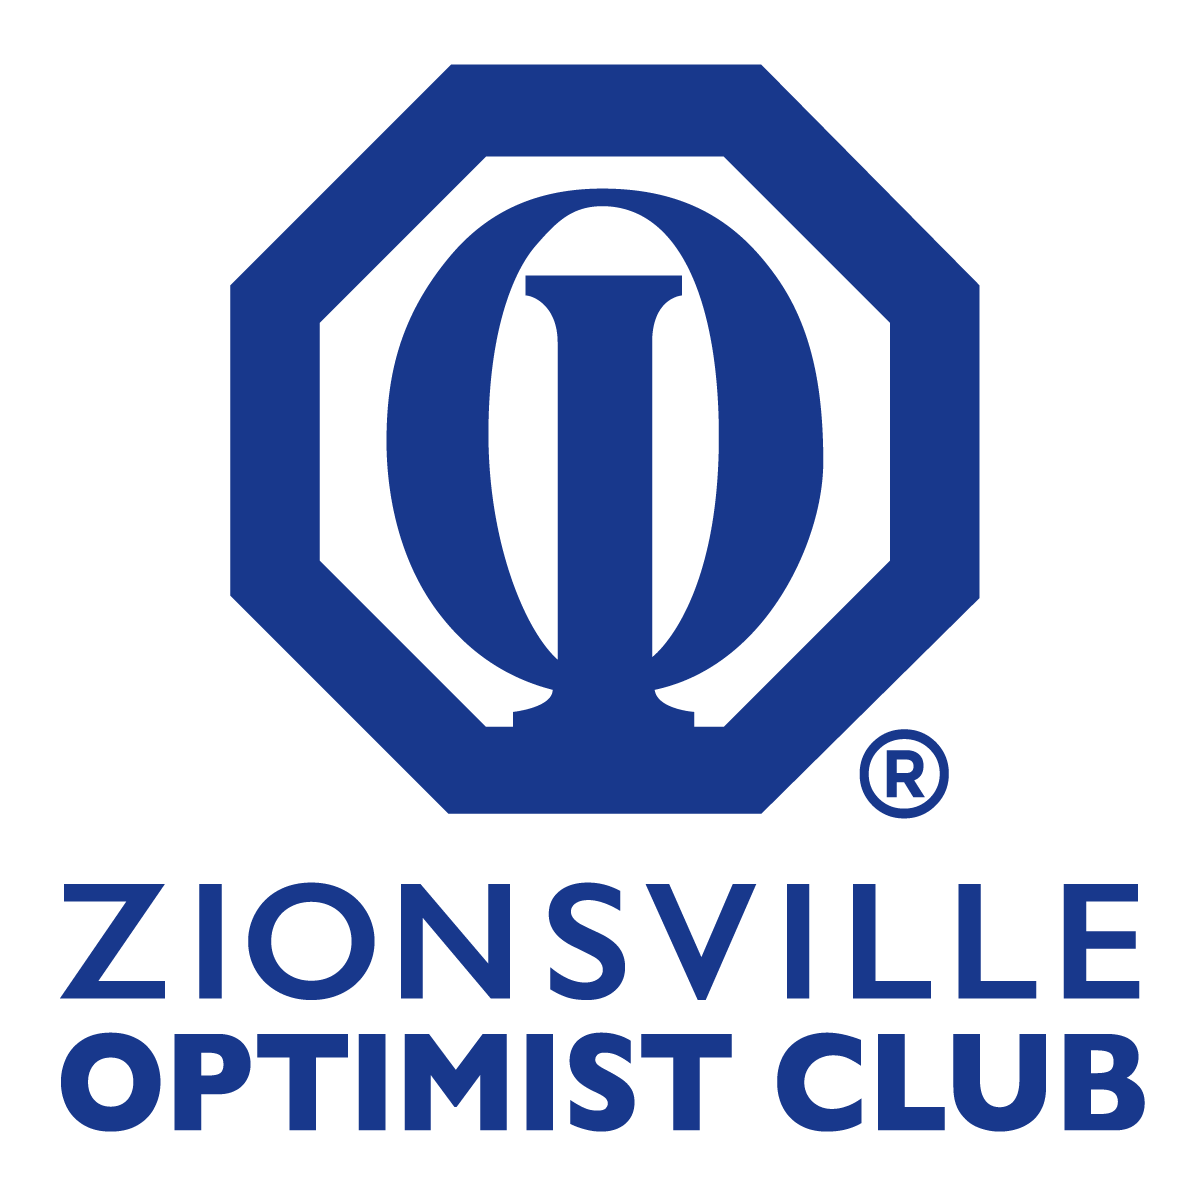 Zionsville Optimist Club